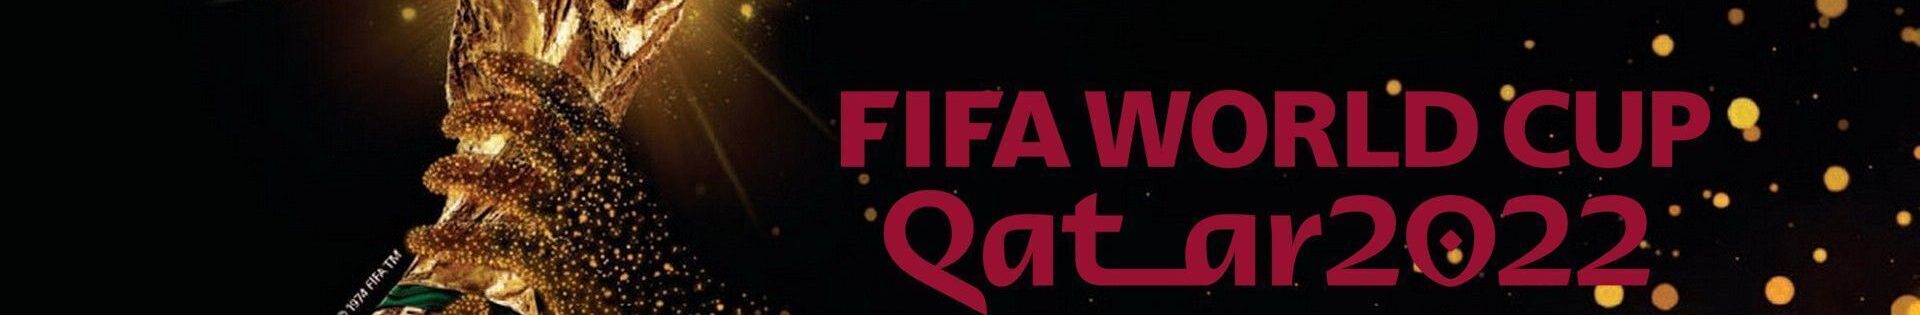 Fussballreise, Fußball Weltmeisterschaft, Perfect Tours Qatar World Cup Fussballreise 123 Logo